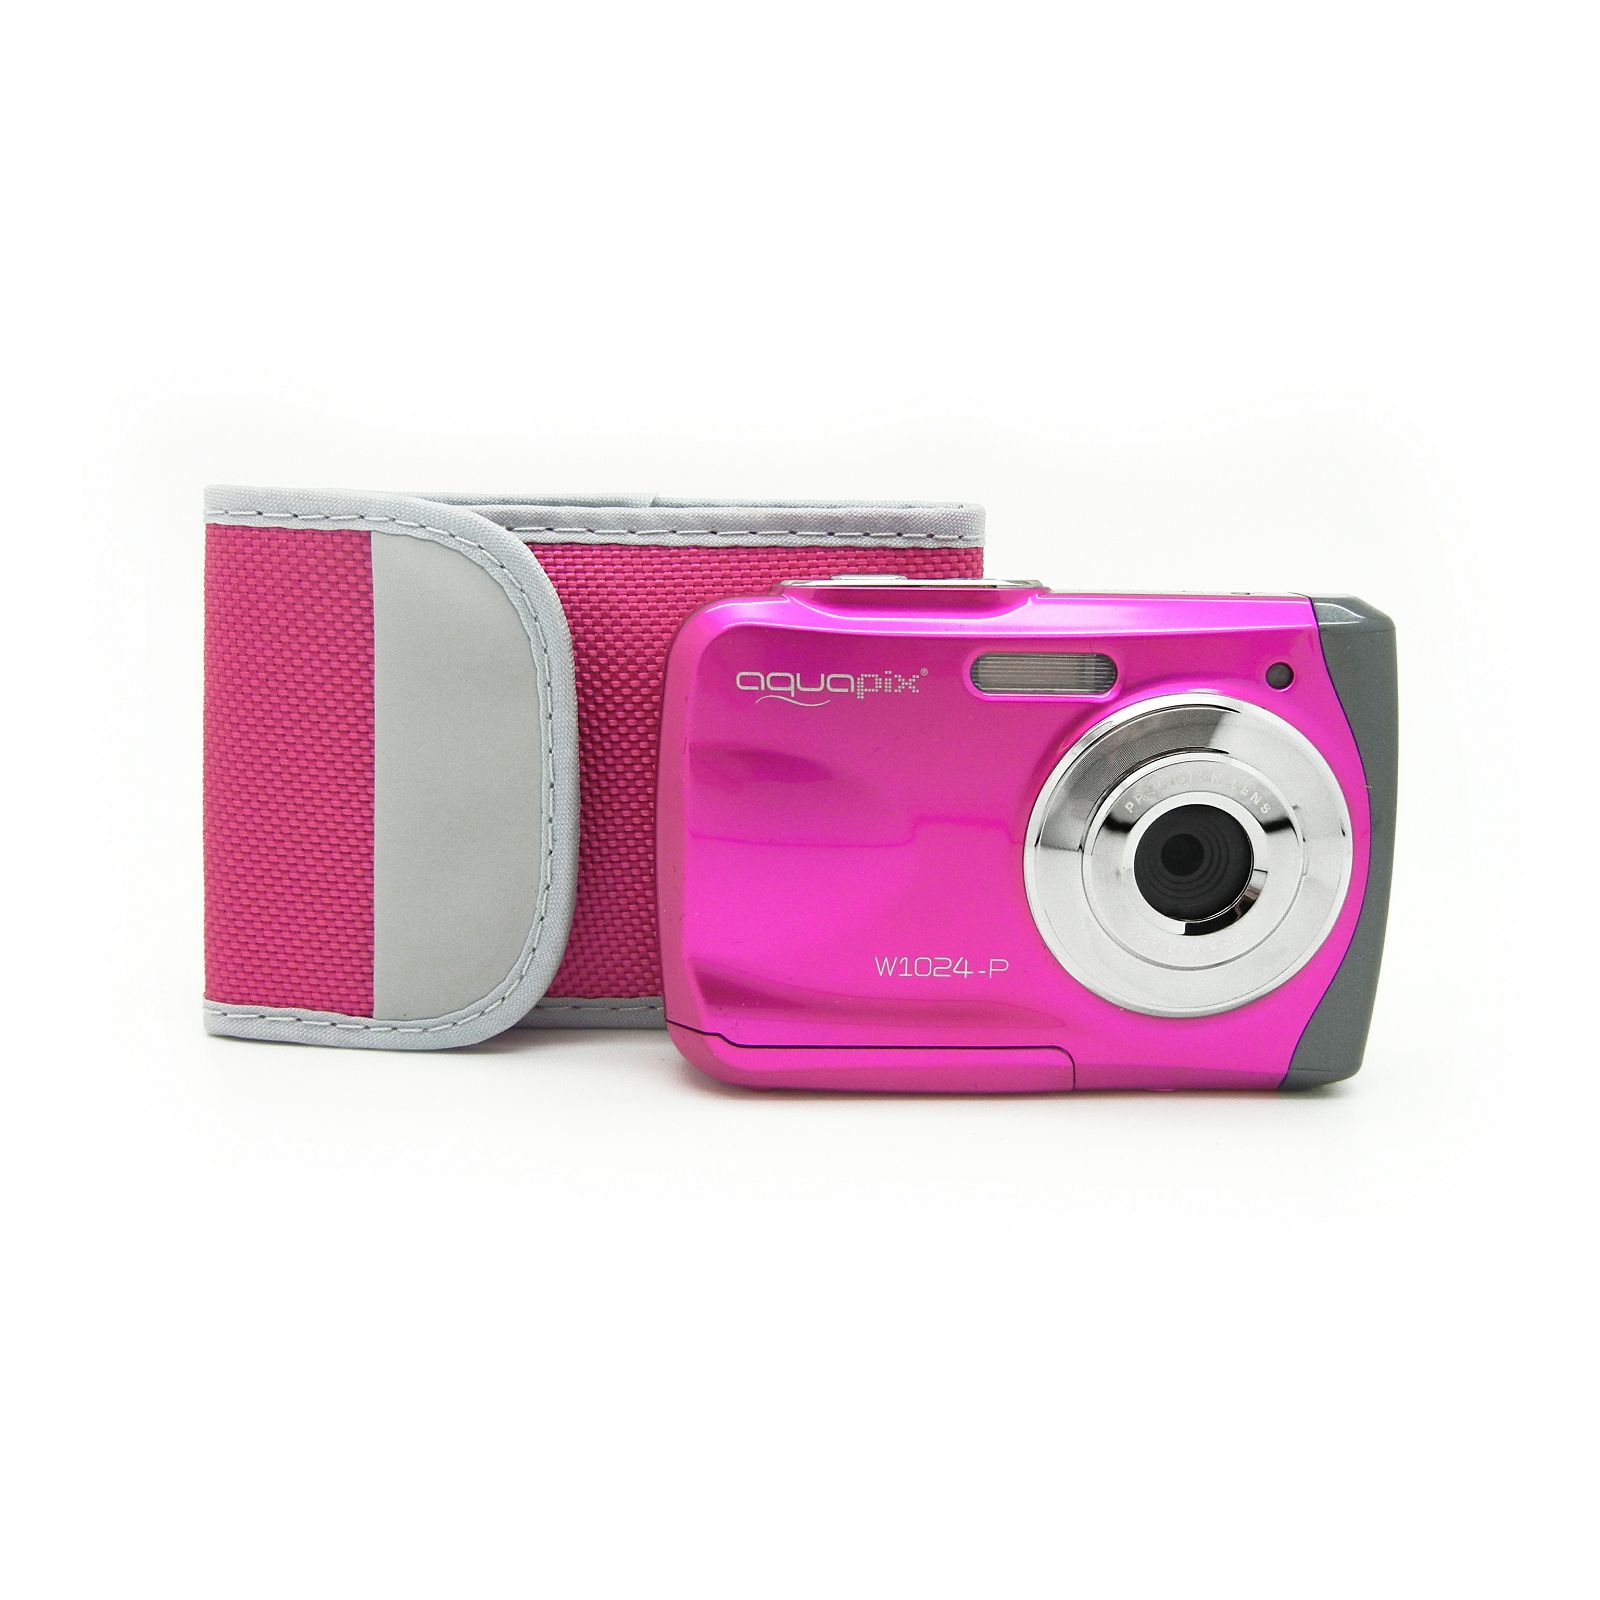 Aquapix W1024-P "Splash" Pink (10013) 10MP 4x zoom LCD podvodni vodonepropusni digitalni fotoaparat do 3m Waterproof digital camera